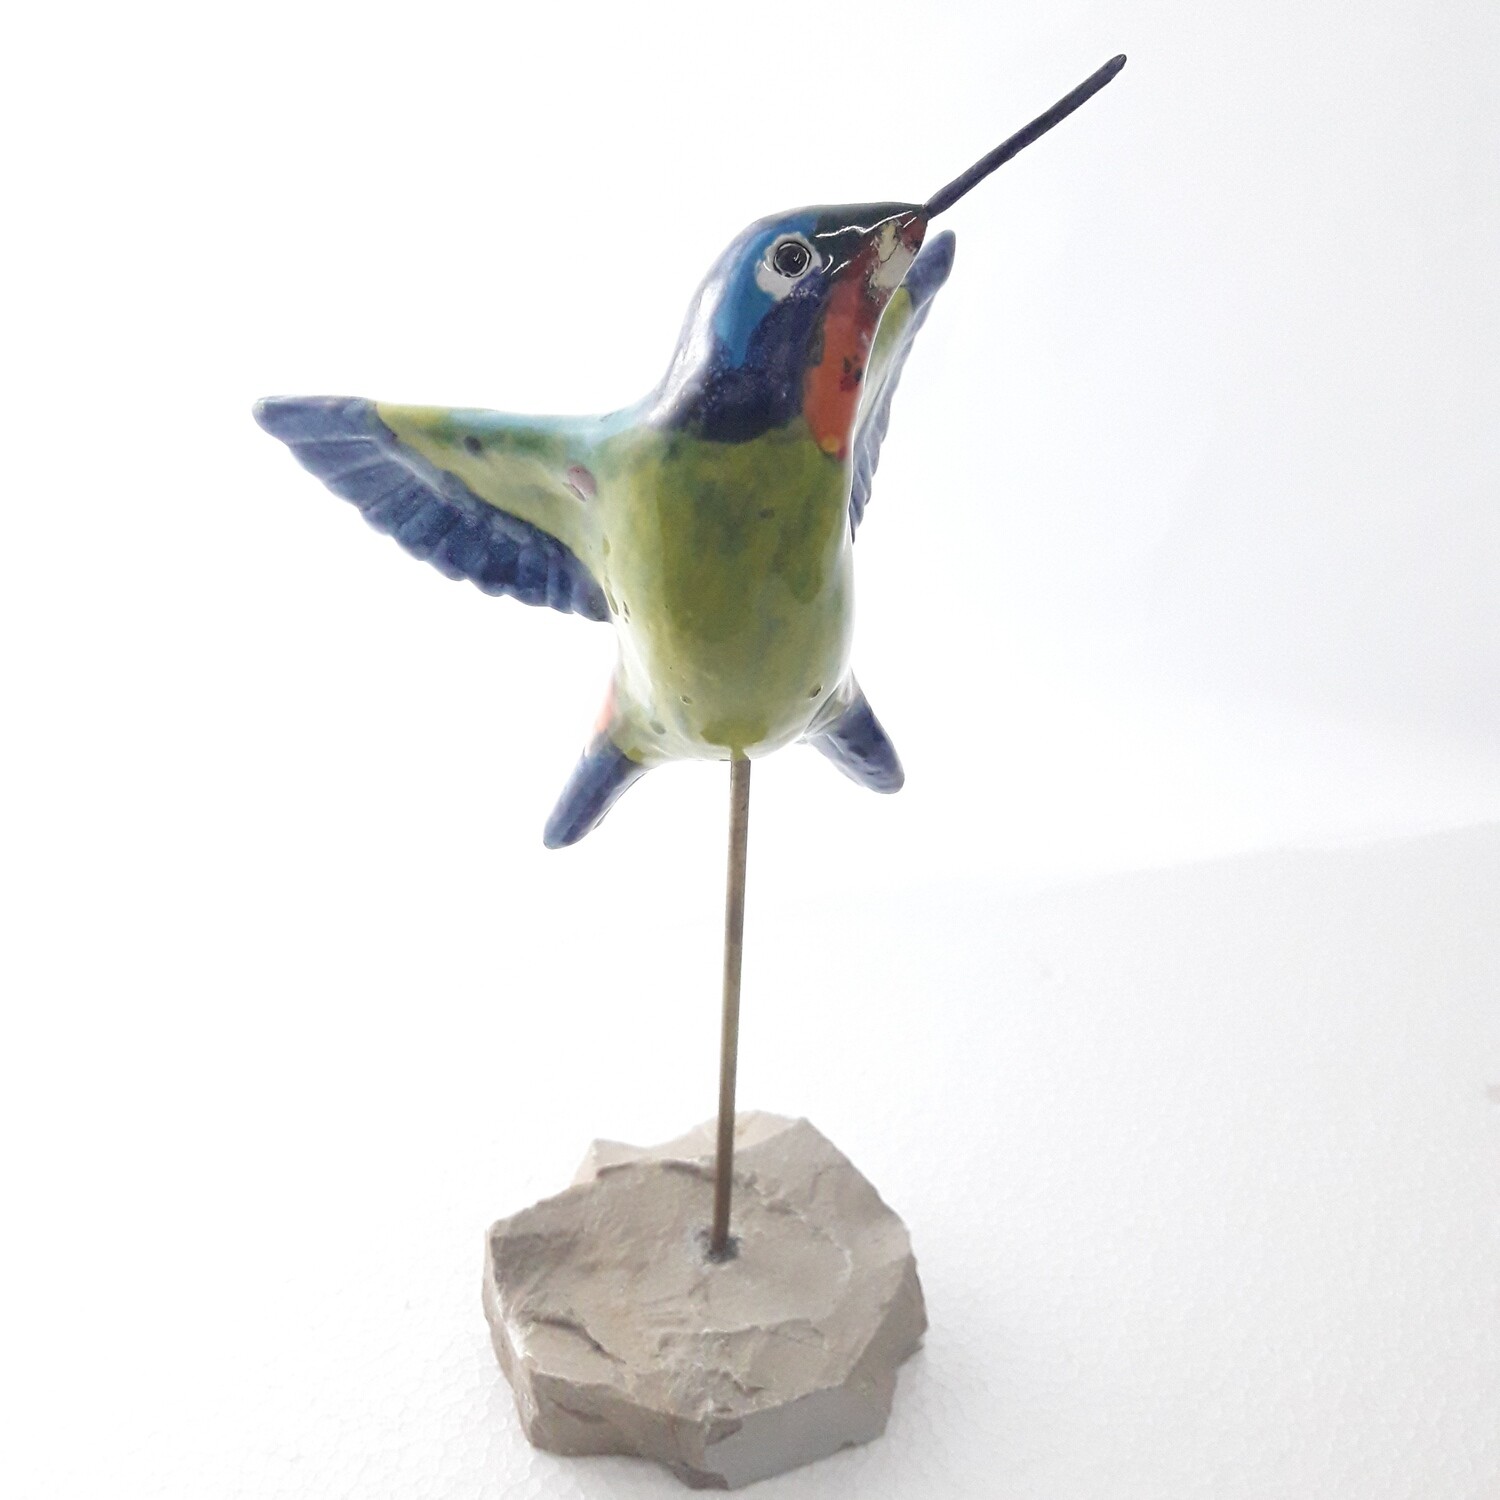 Ceramic Hummingbird